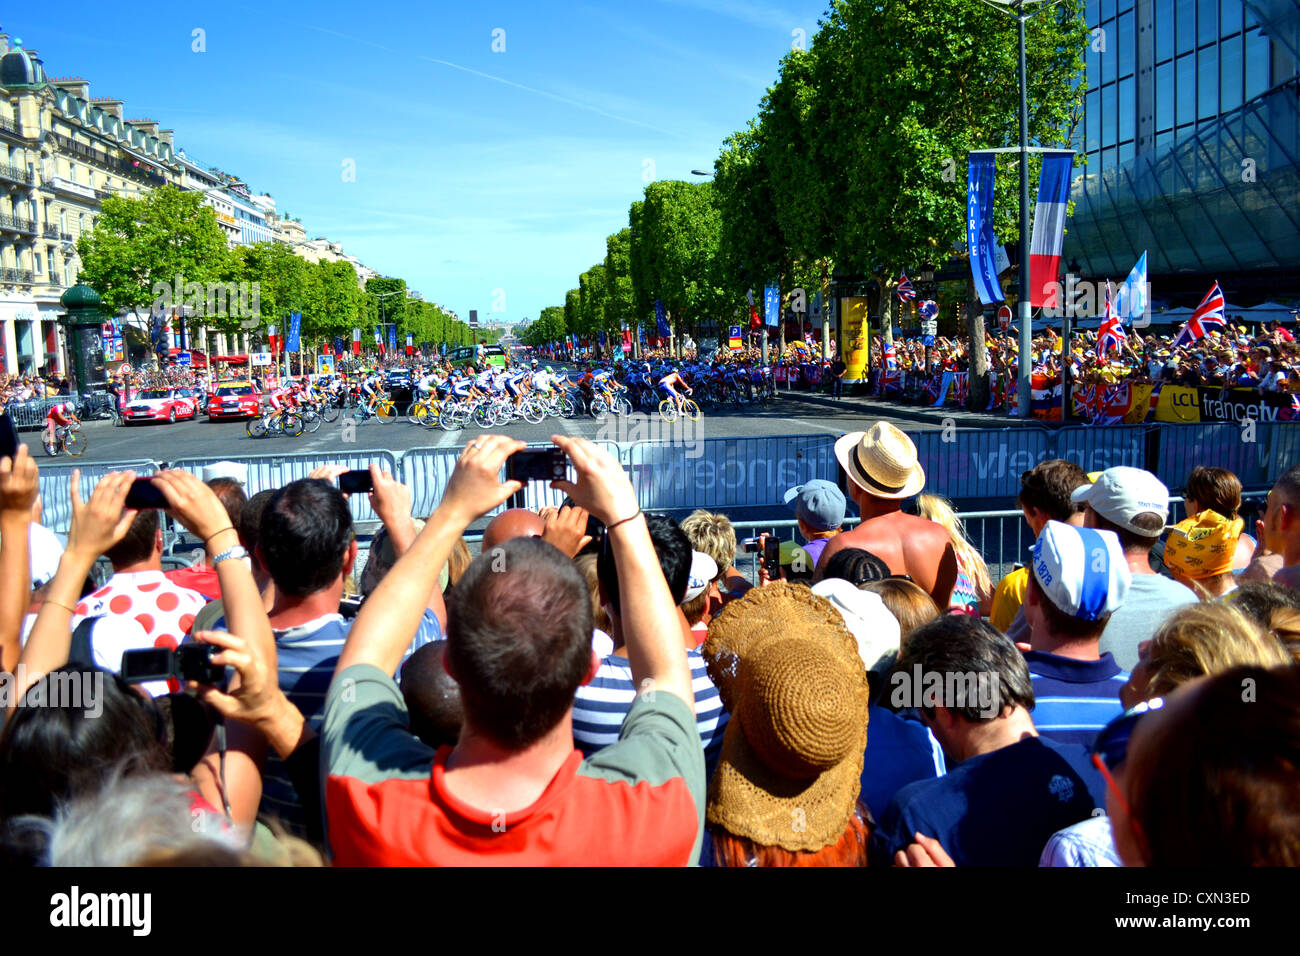 Le Tour de France peleton arrondit le virage en haut de l'avenue des Champs-Élysées, tandis que les foules énormes prendre dans l'excitation. Banque D'Images